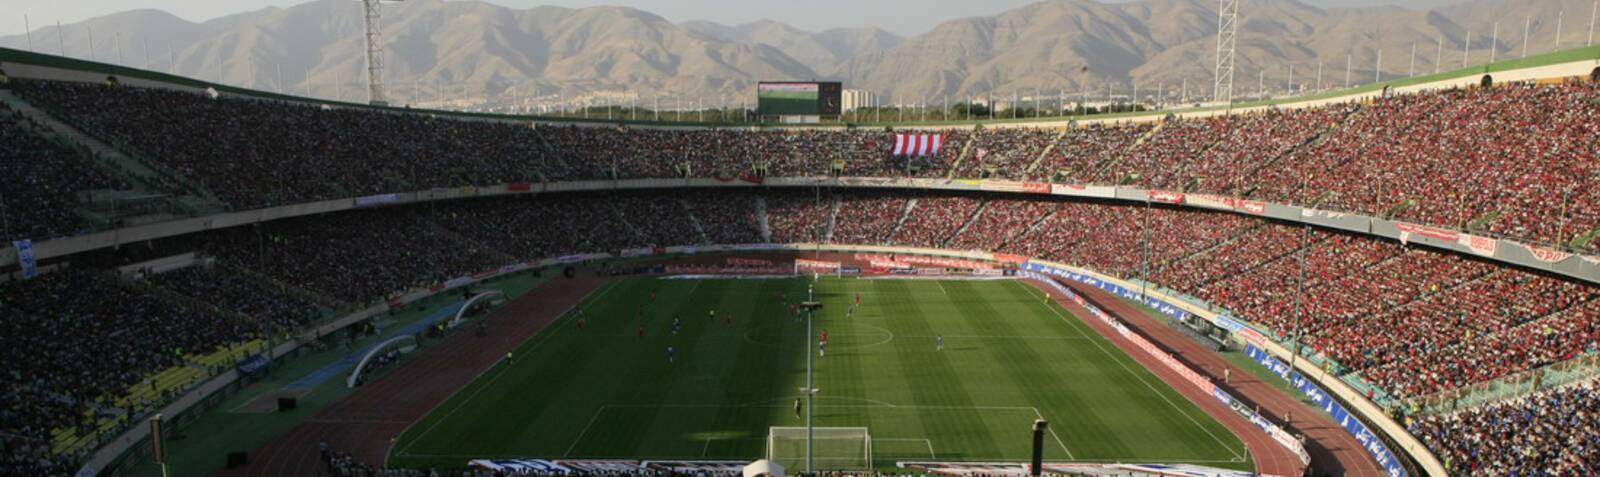 Complejo Deportivo de Azadi Teherán